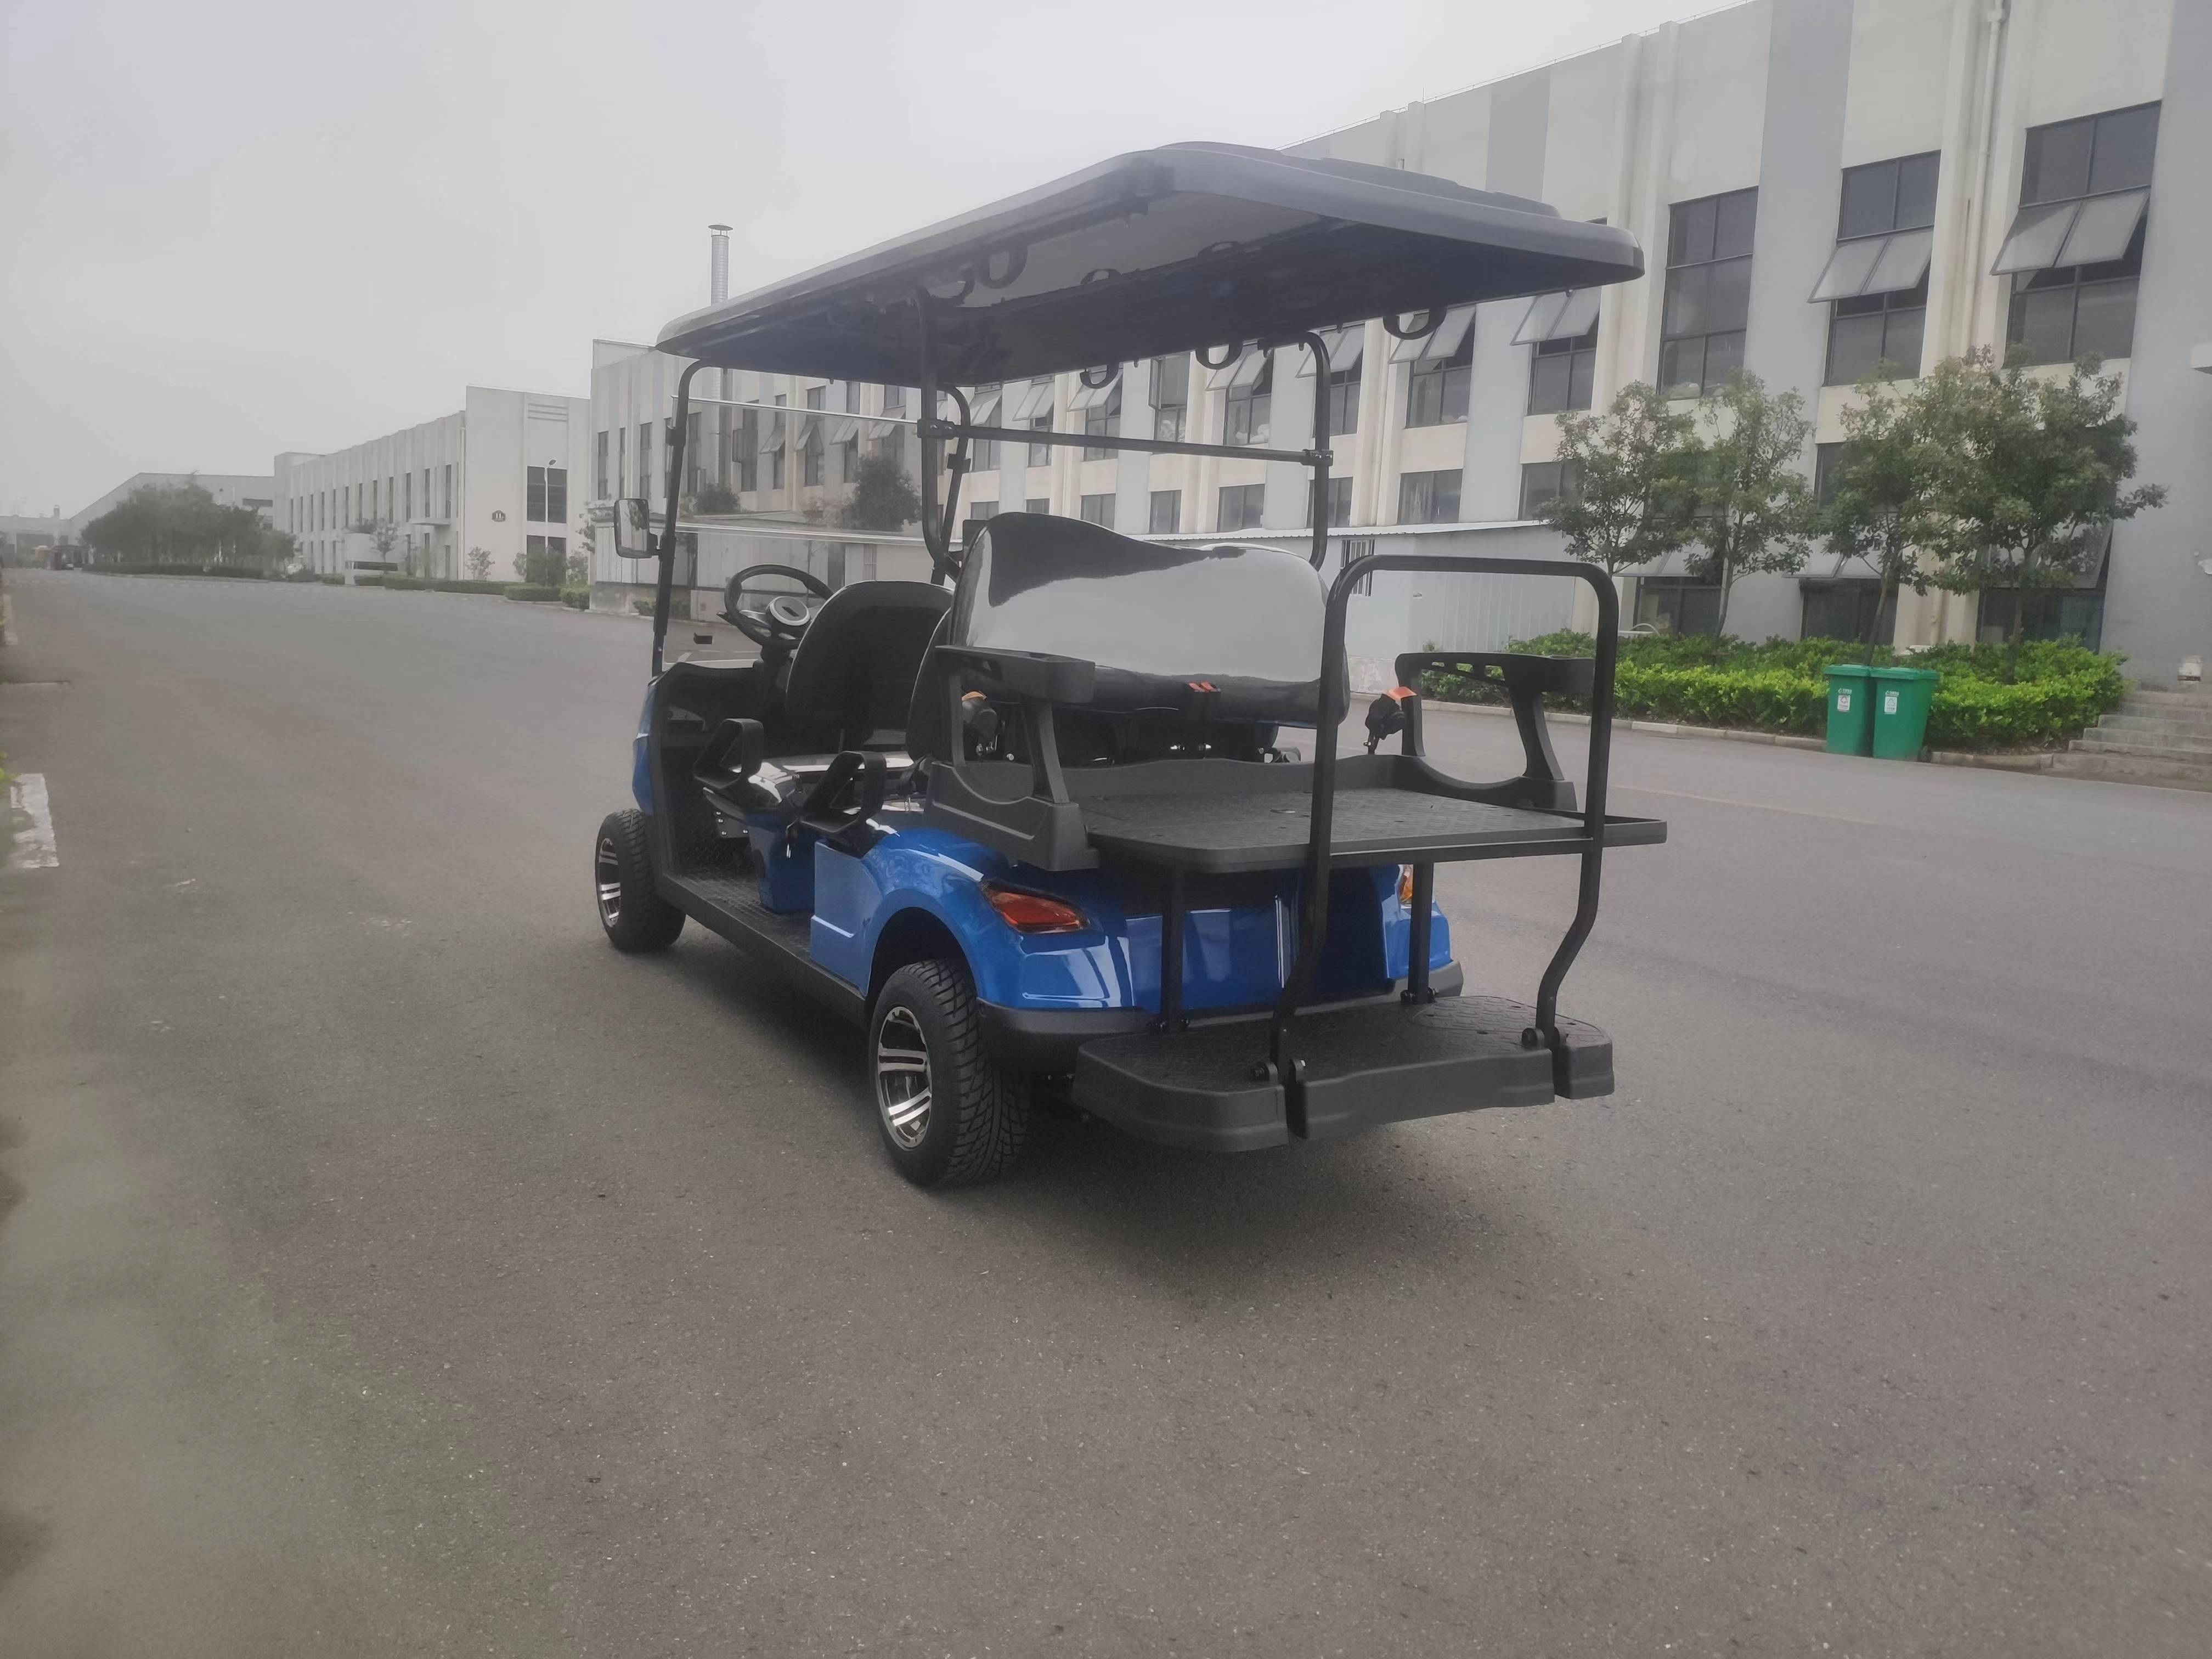 Hotel Golf Cart Hotel Linen Cart Electric Golf Cart 8-seater Golf